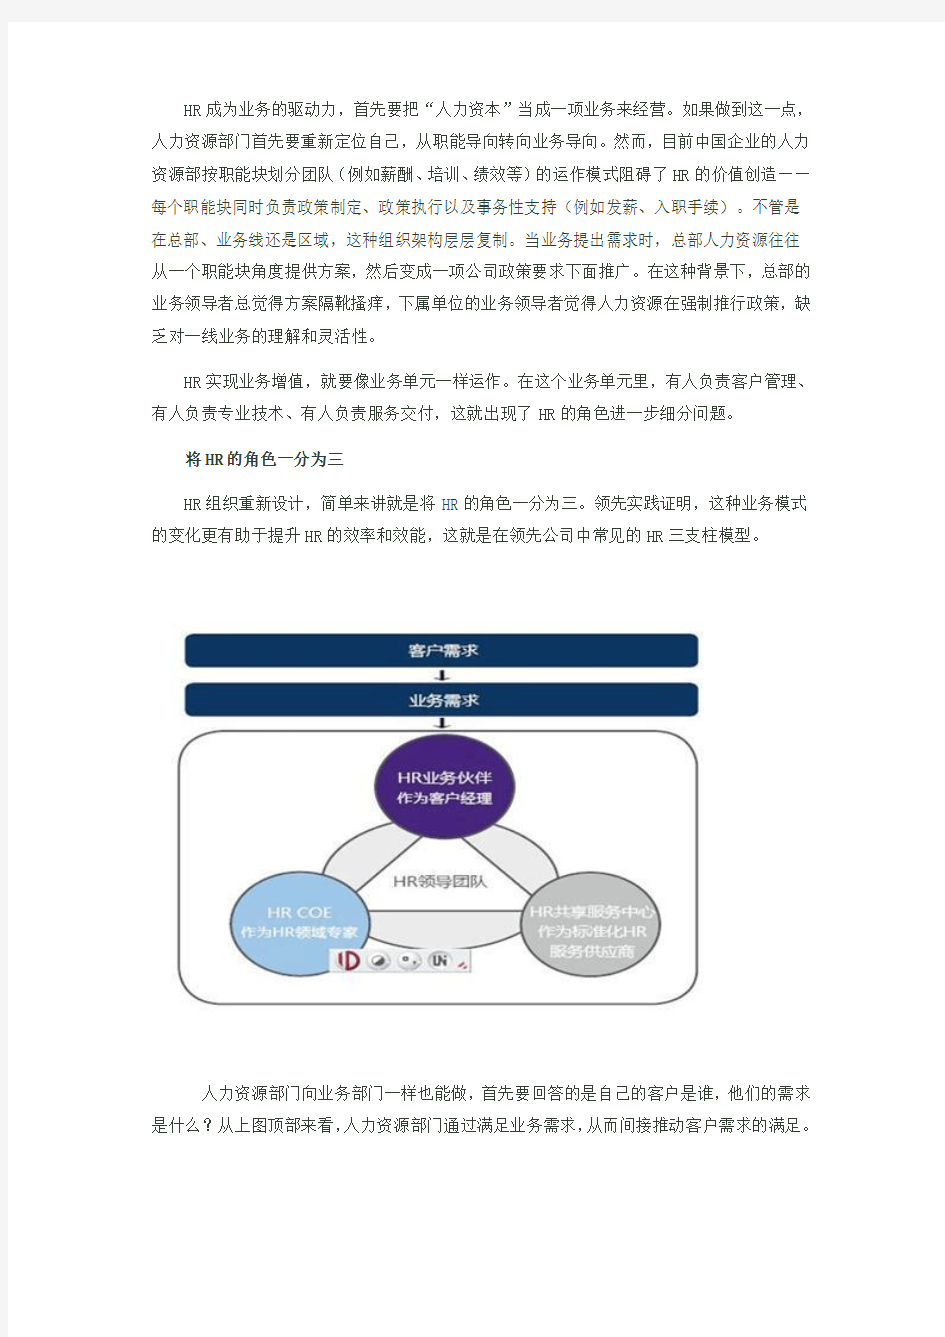 HRBP成长学习_HR三大支柱模型介绍